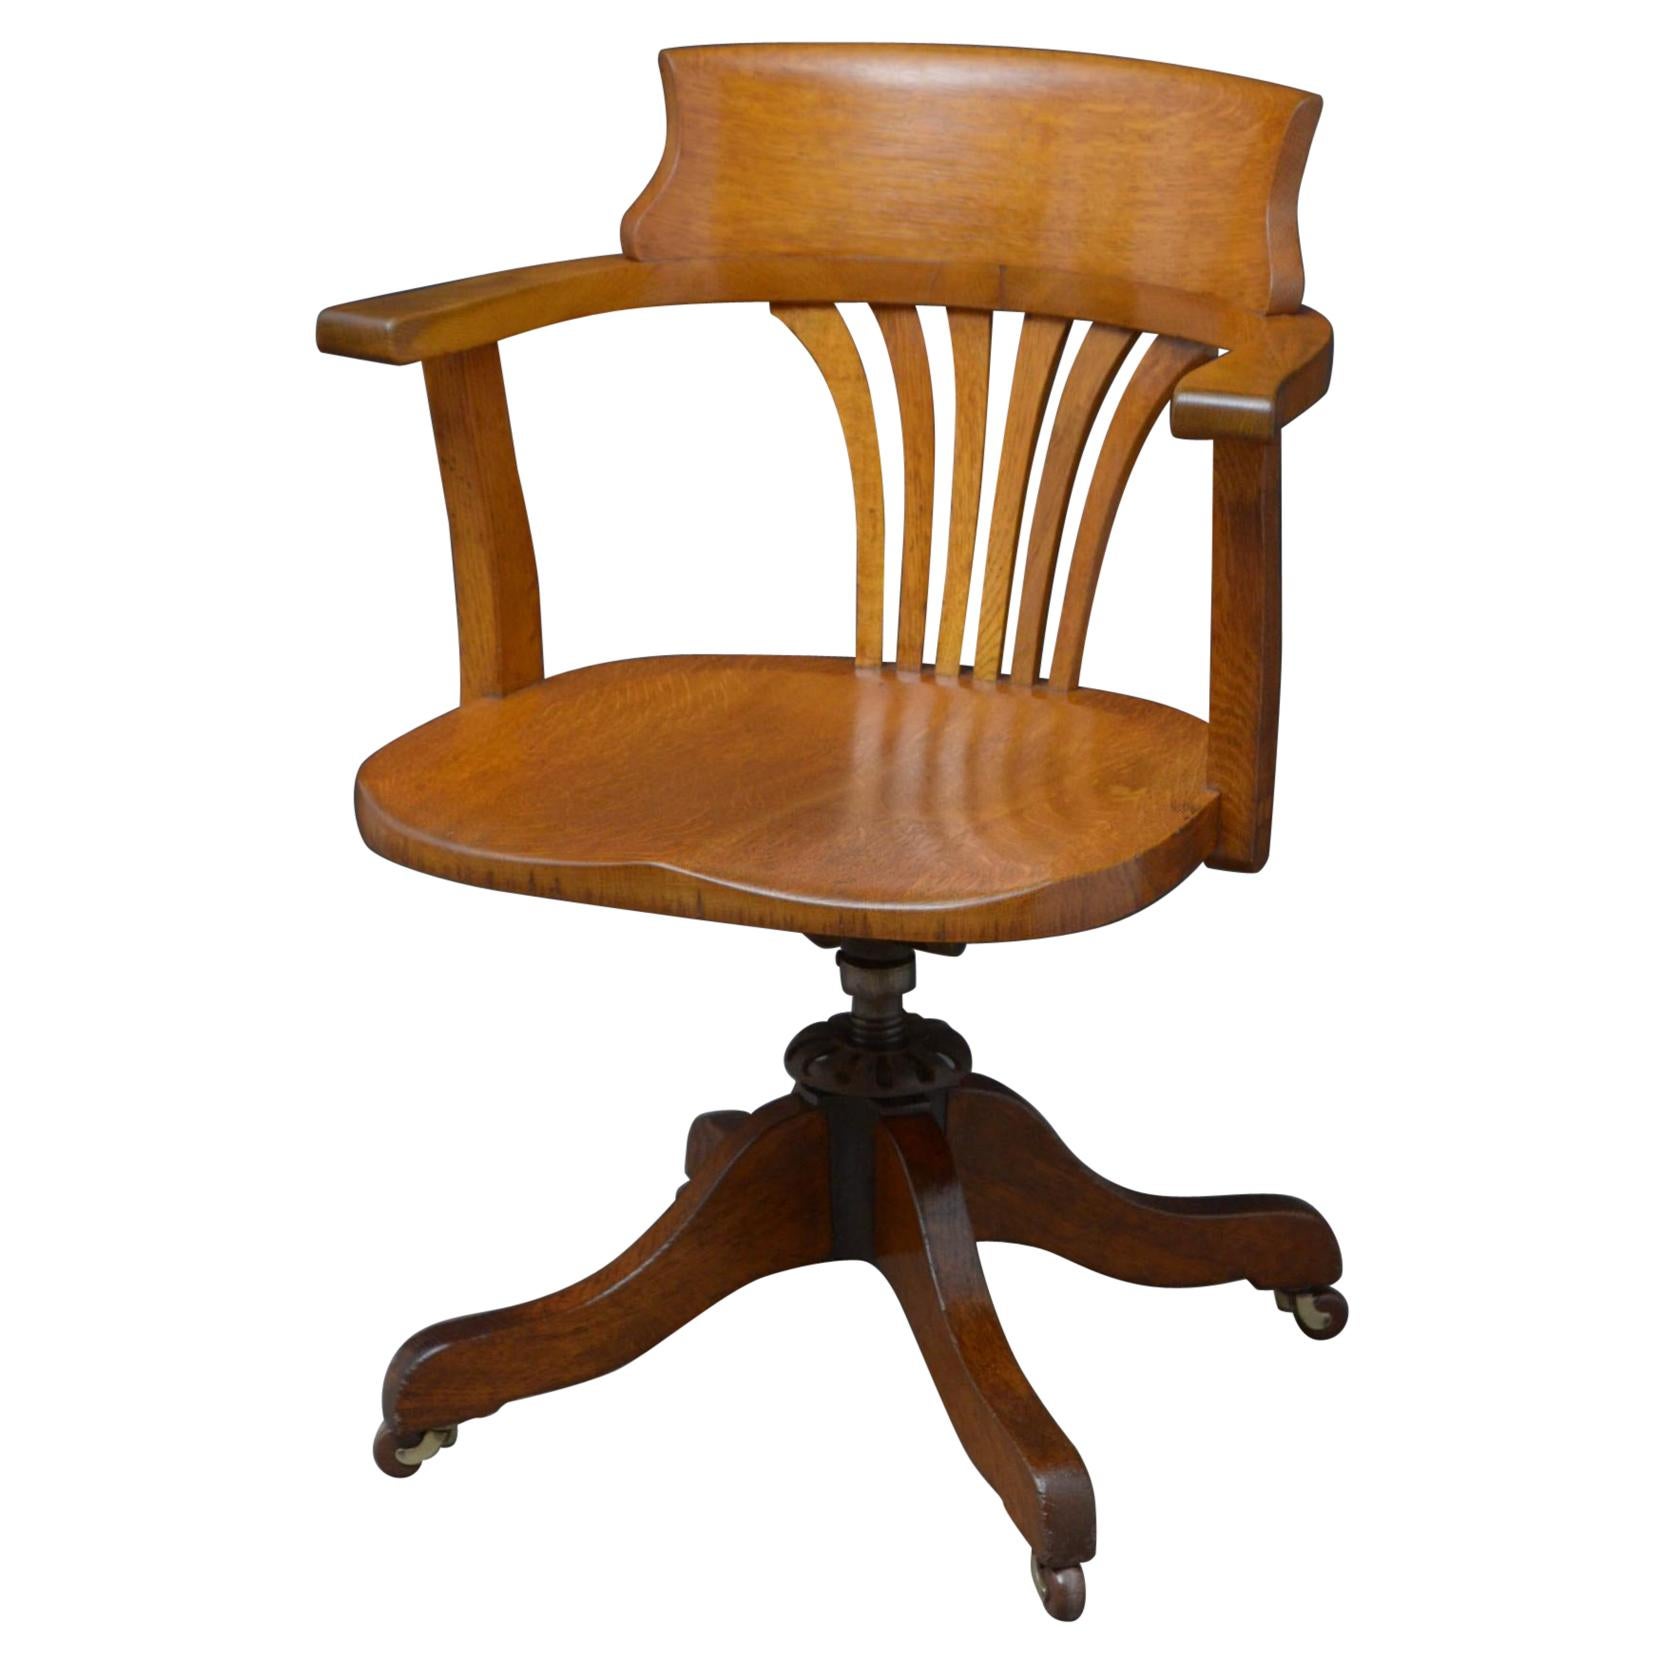 The Oak Office Chair aus der Jahrhundertwende